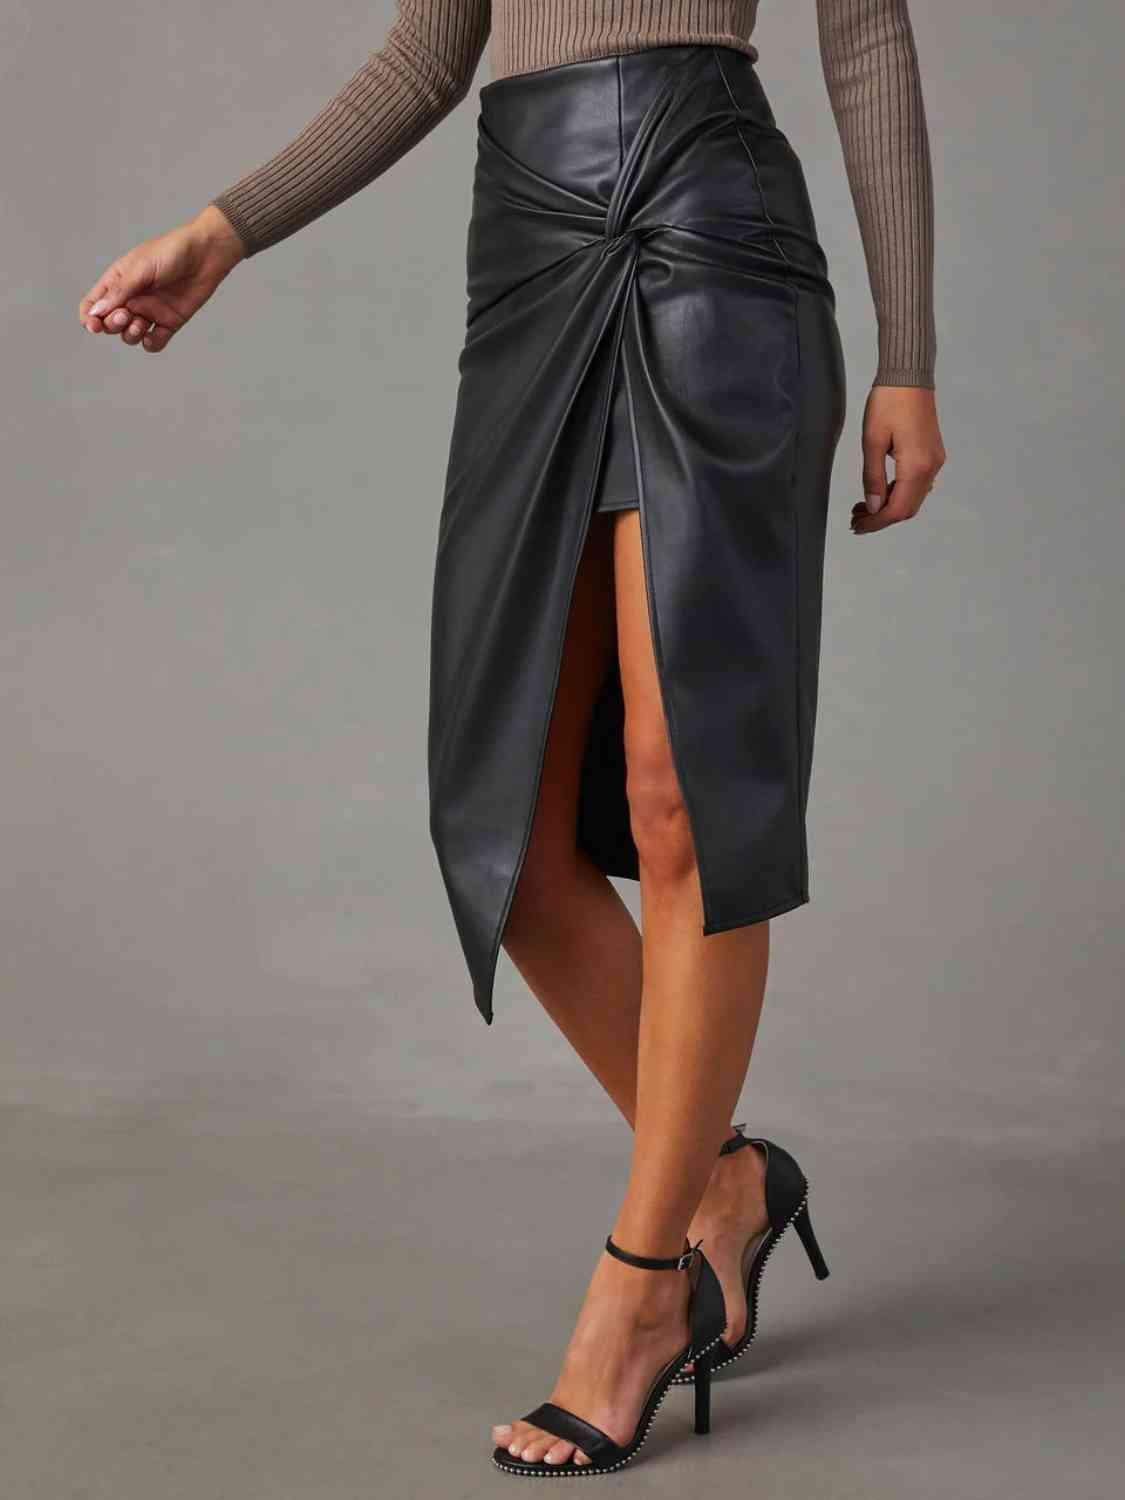 Fab High Waist Skirt - Shop SWR Luxe